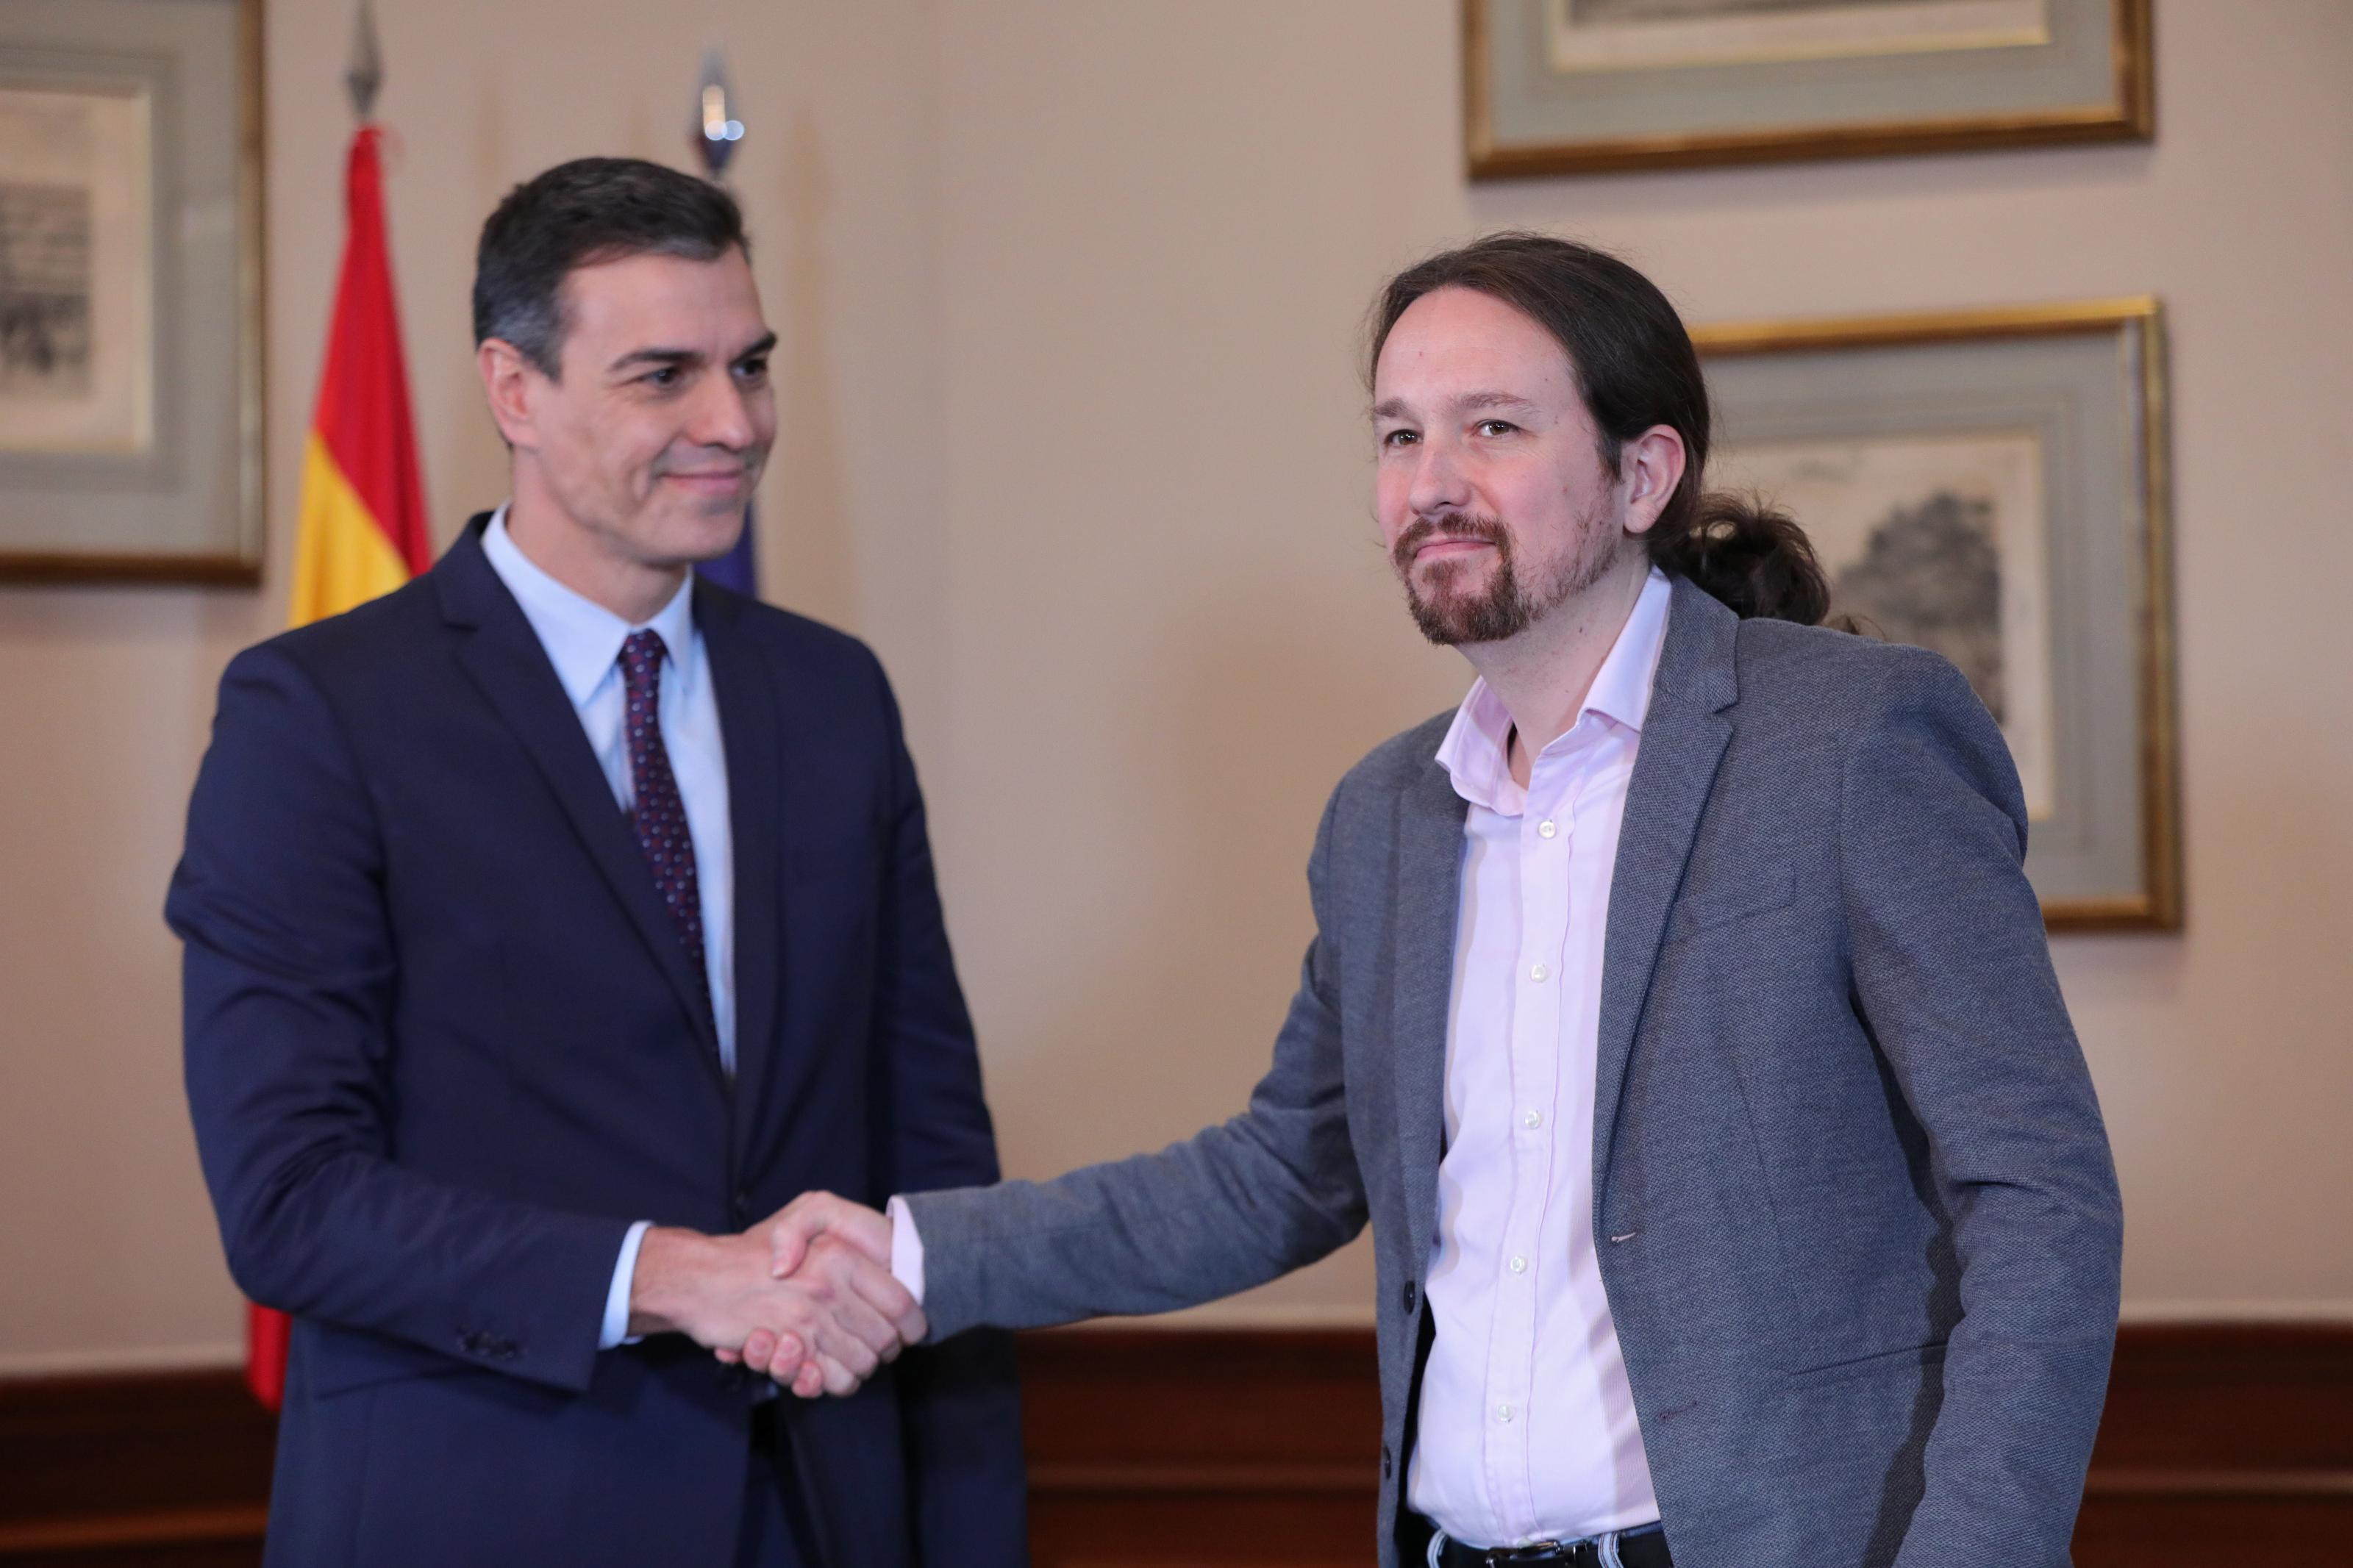 El presidente del Gobierno en funciones Pedro Sánchez y el líder de Podemos Pablo Iglesias se abrazan en el Congreso de los Diputados después de firmar el acuerdo de coalición.